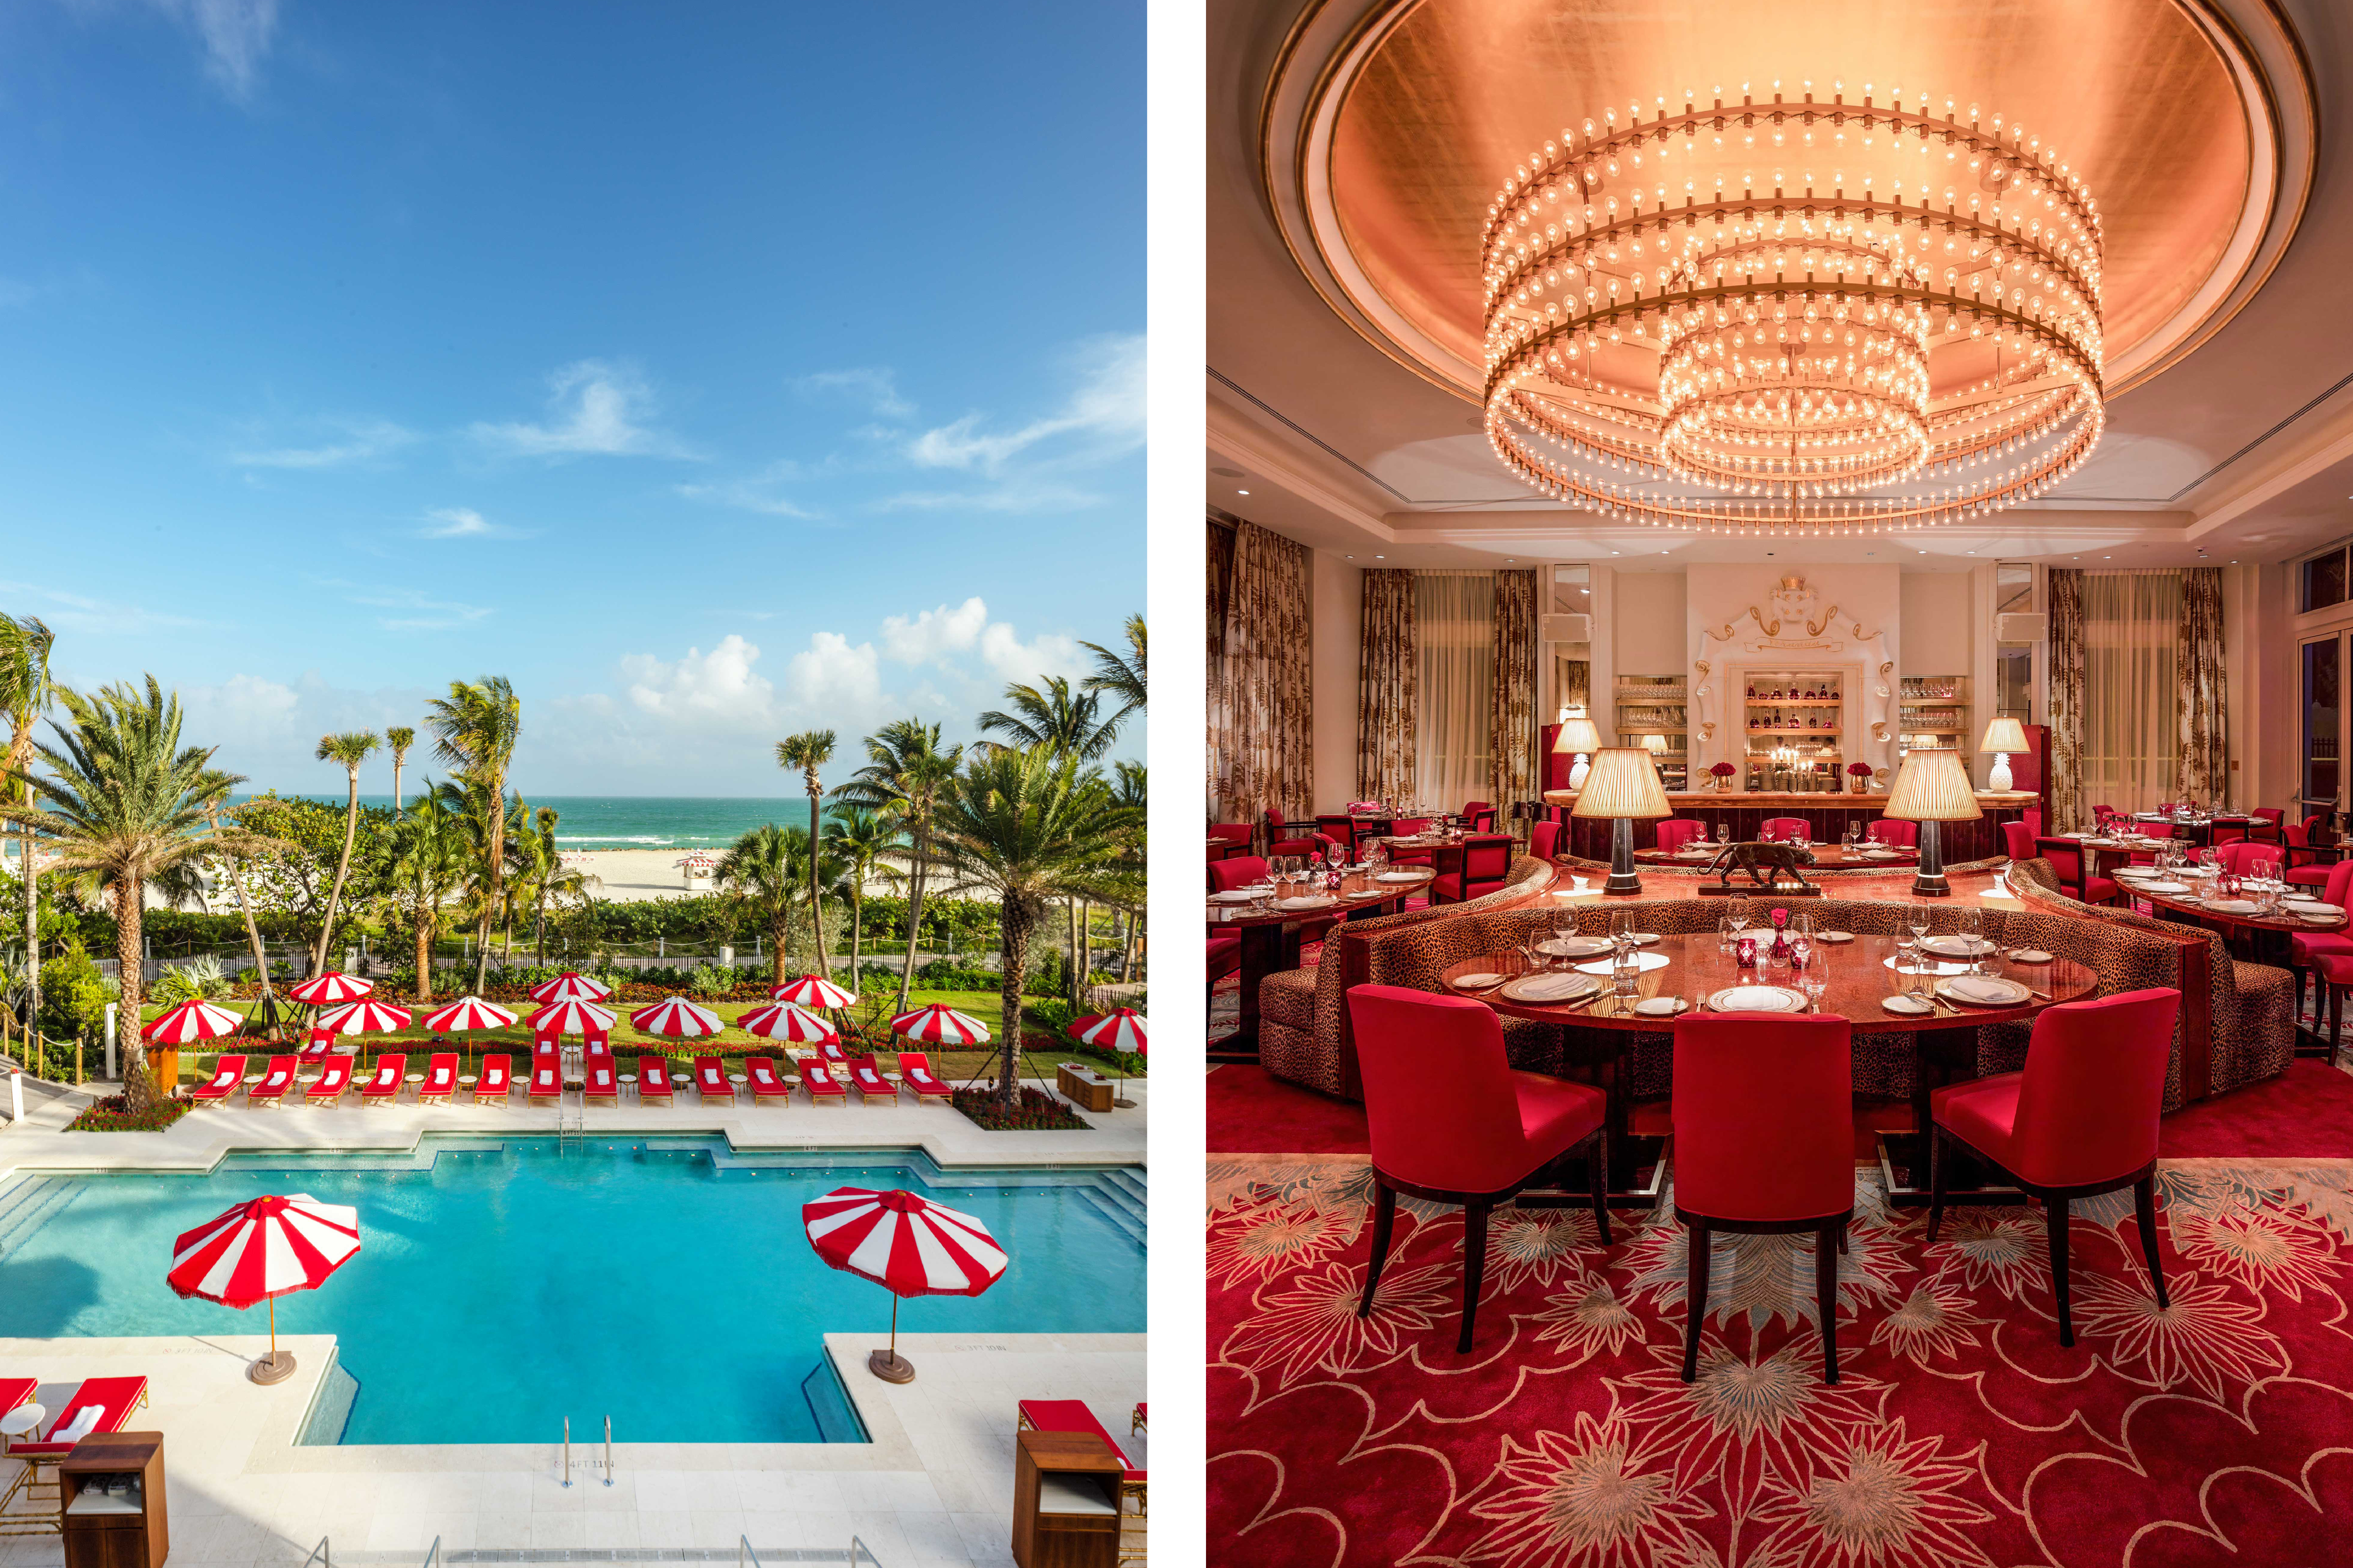 Faena Hotel Miami Beach – Mr & Mrs Smith hotel collection